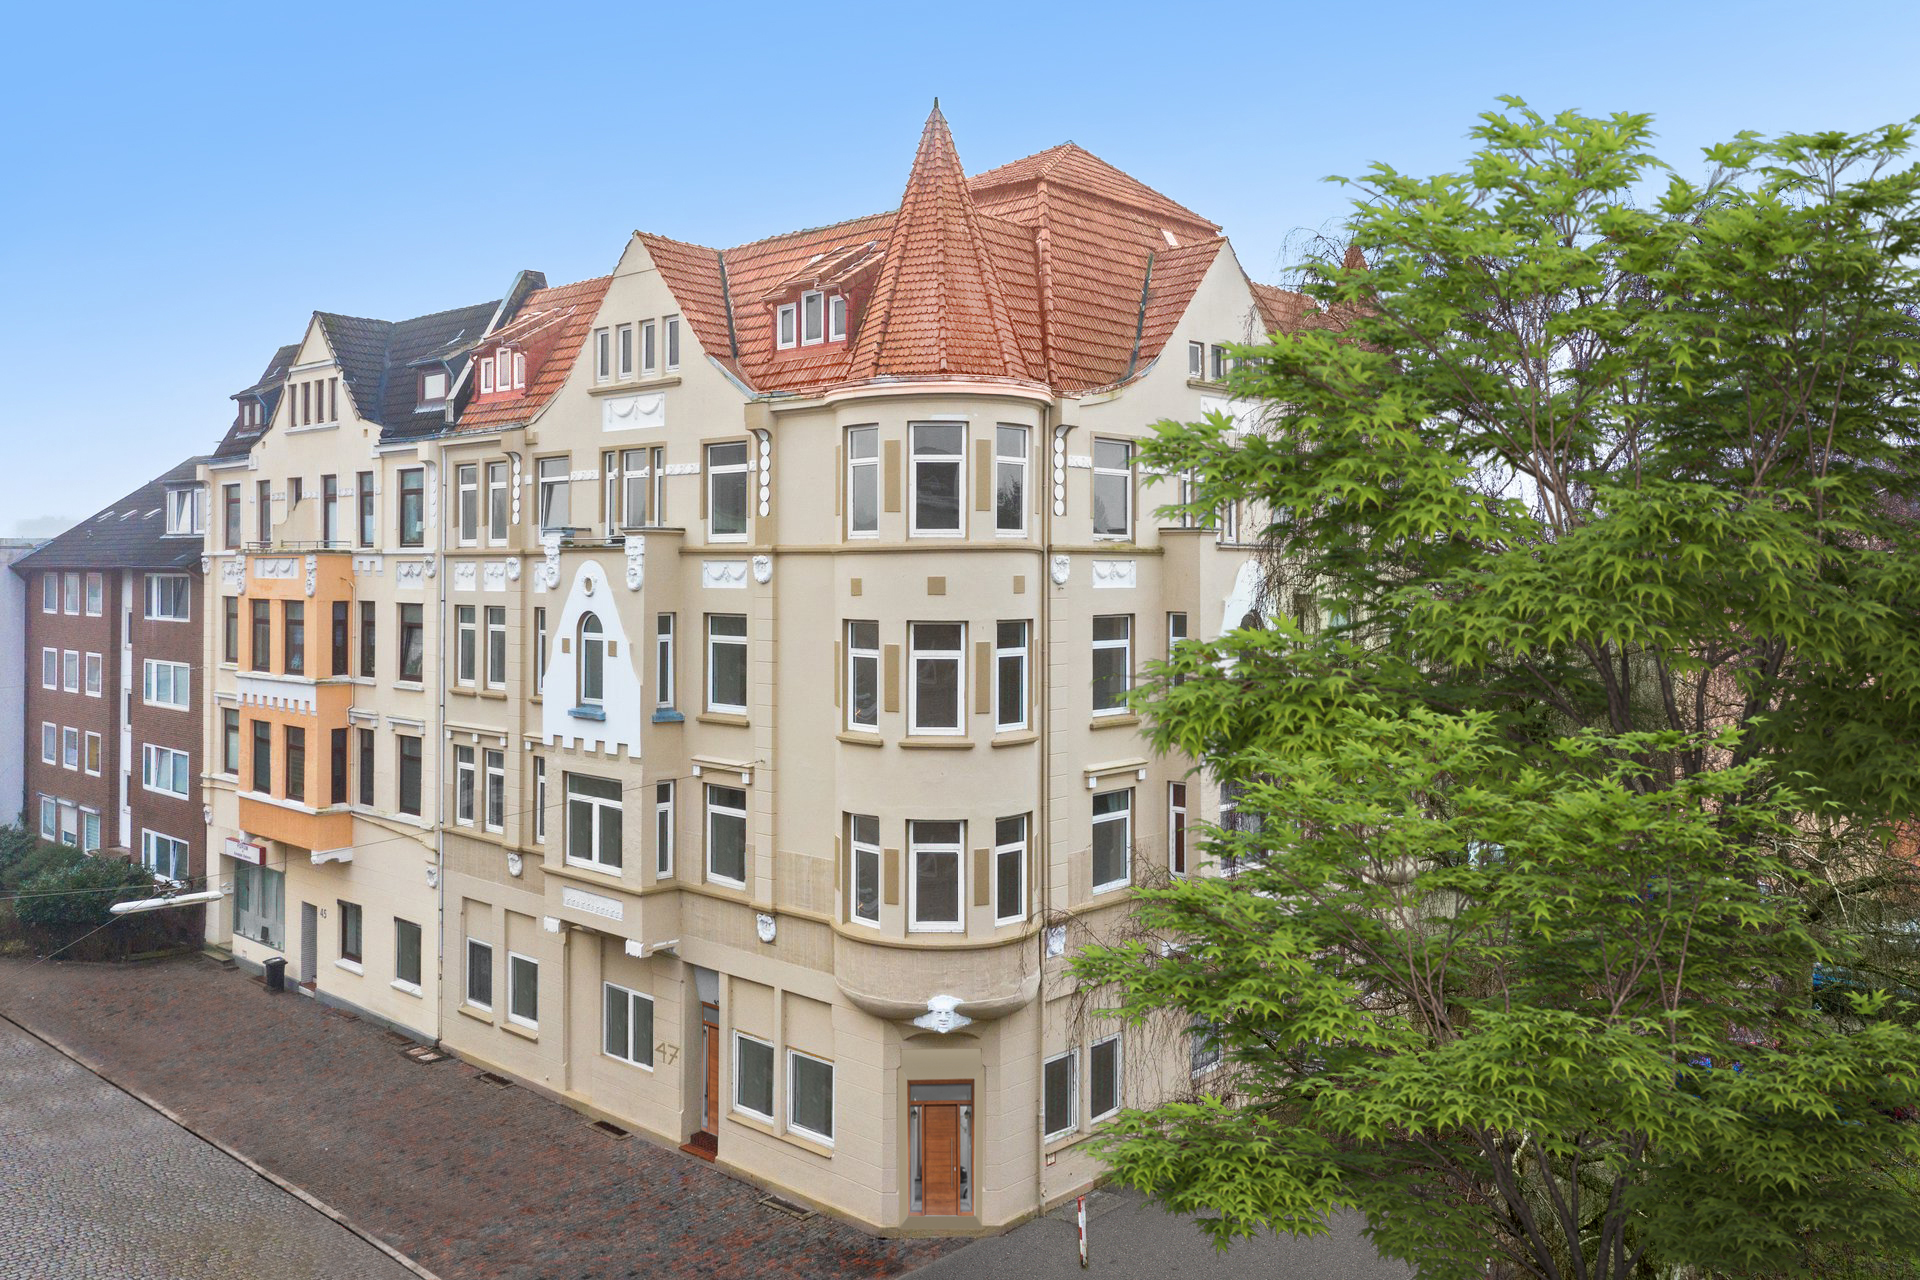 Neues Vertriebsobjekt mit 13 Wohnungen, 5,5% Rendite und spektakulärer Fassade in Bremerhaven!